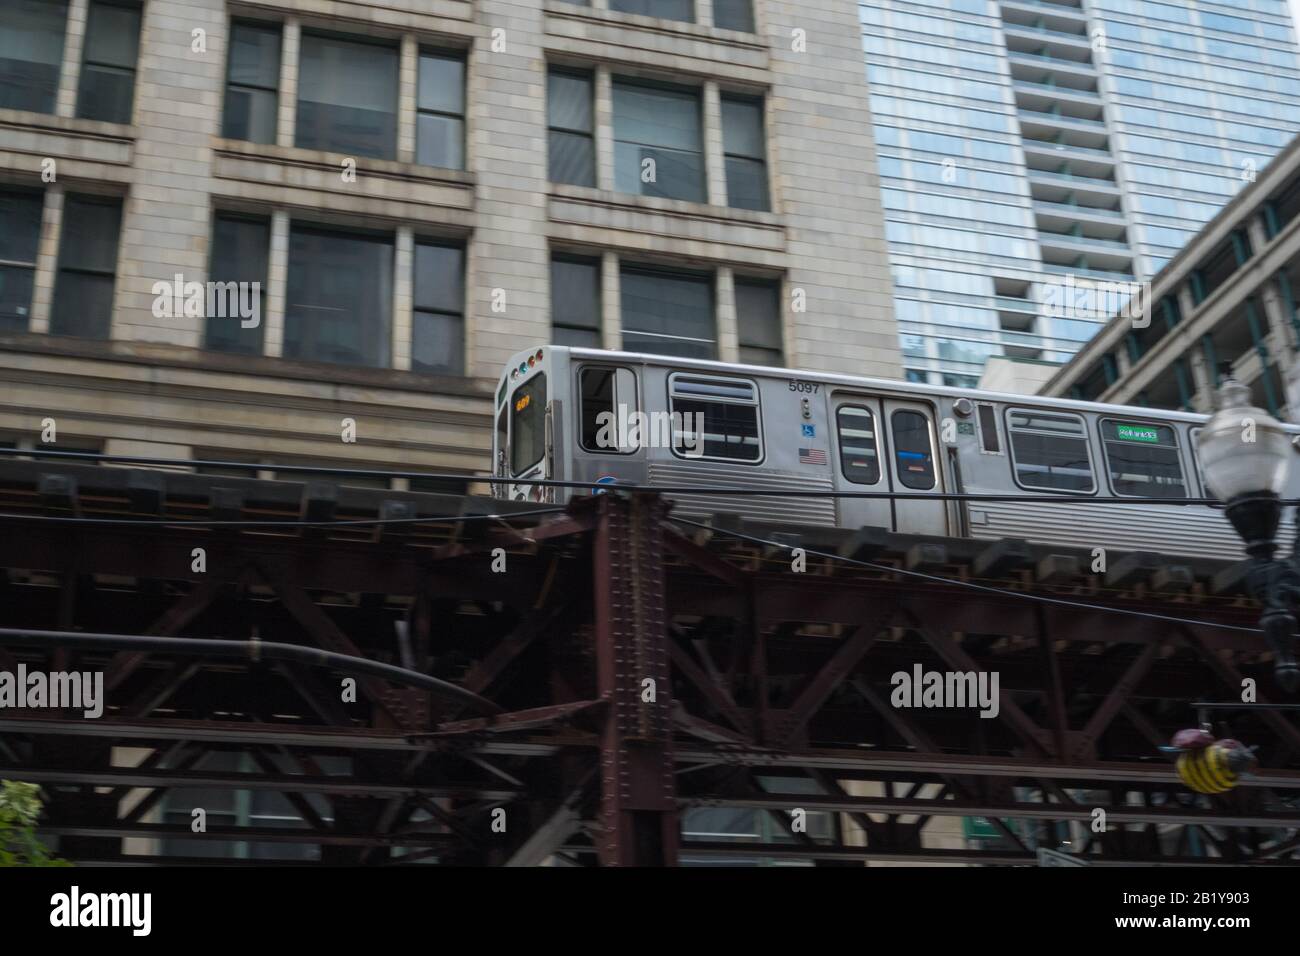 Elevated subway train, N Wabash Avenue, Chicago, Illinois Stock Photo